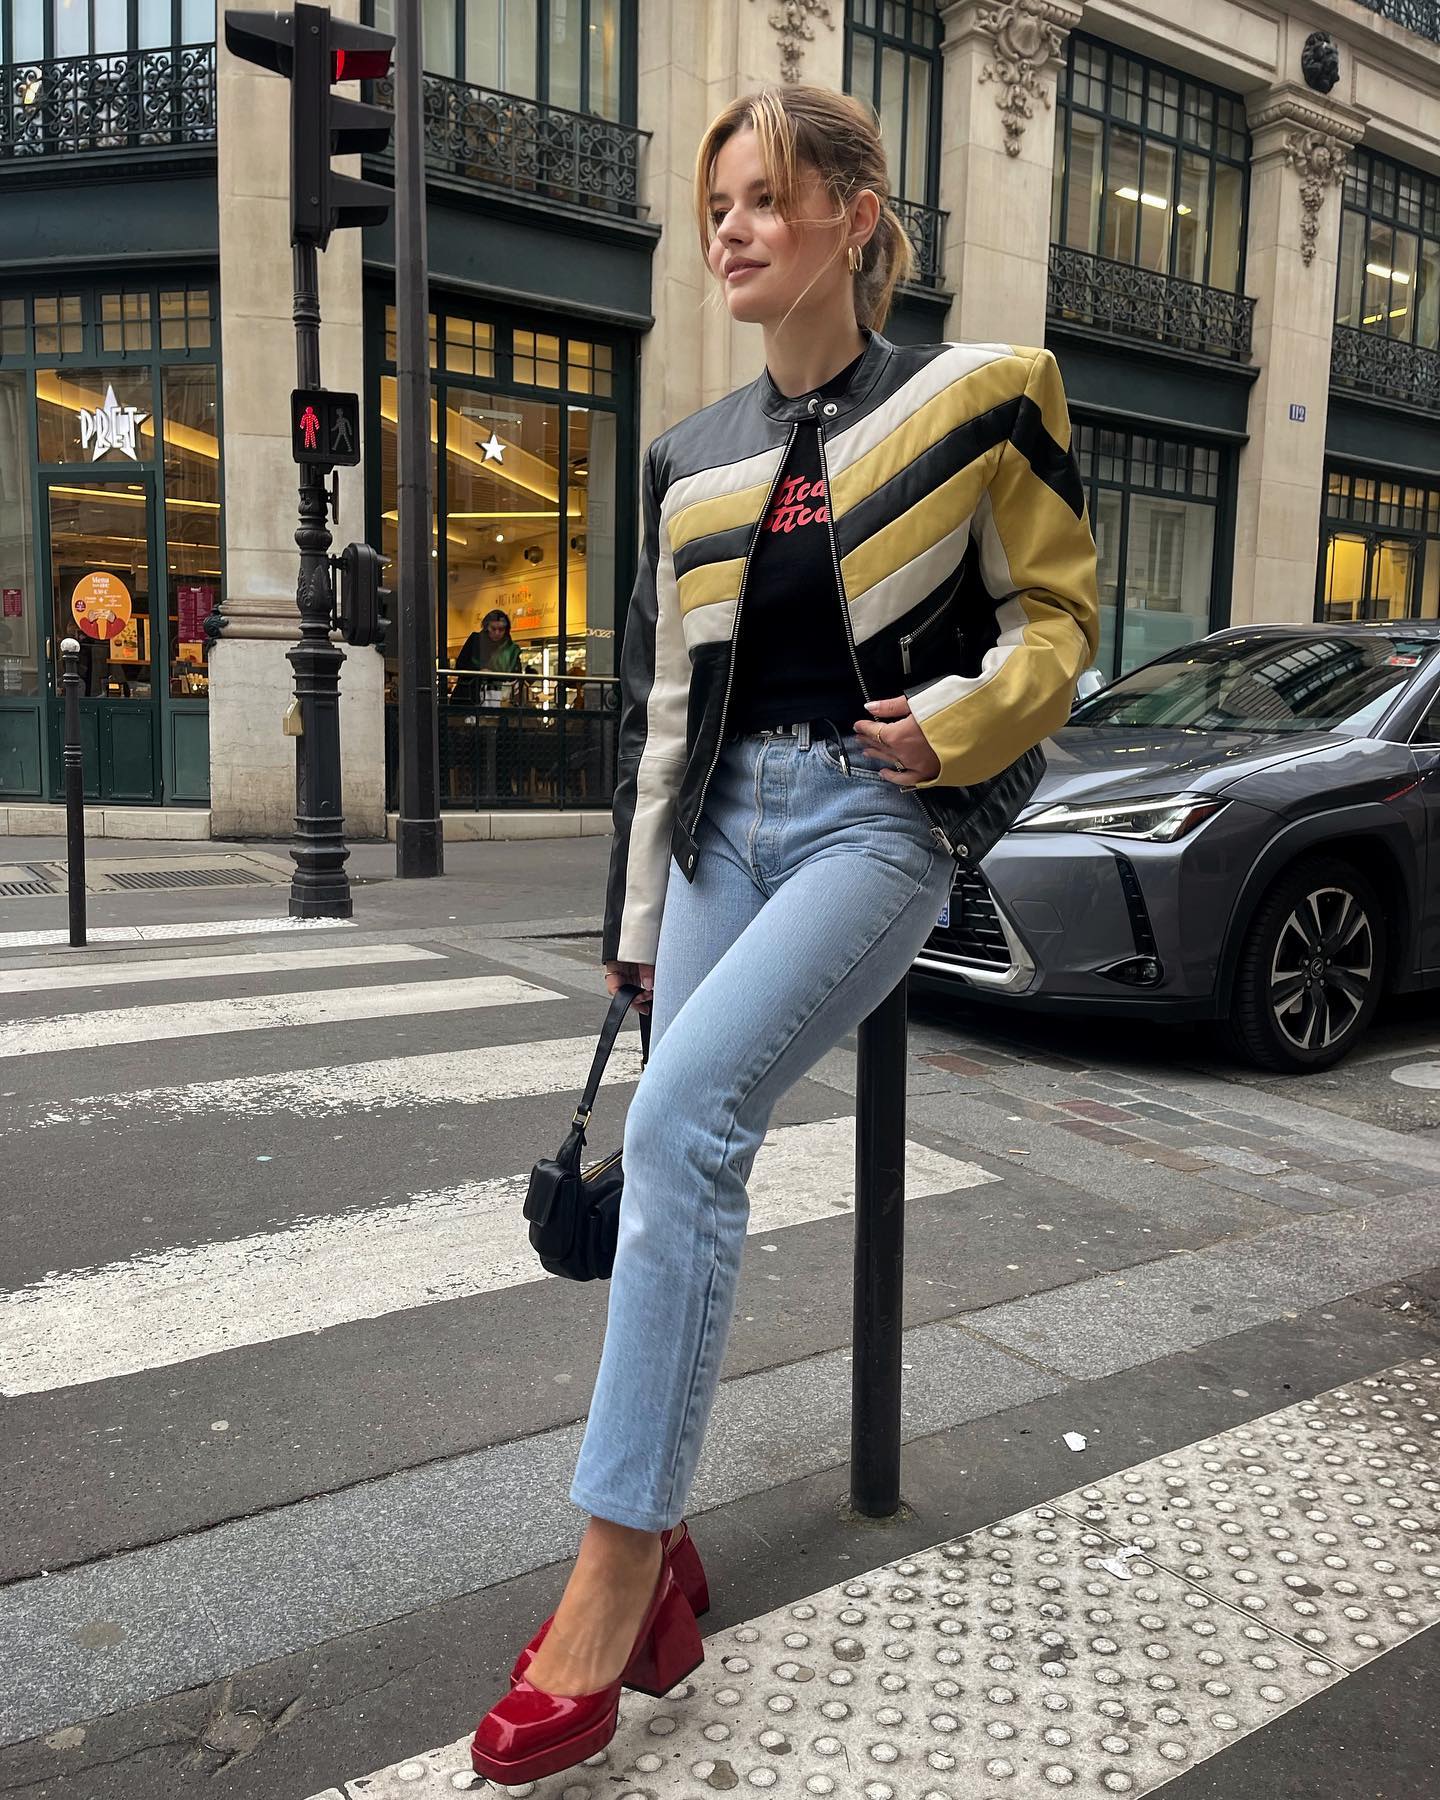 Sabina Socol wearing red shoes in Paris.